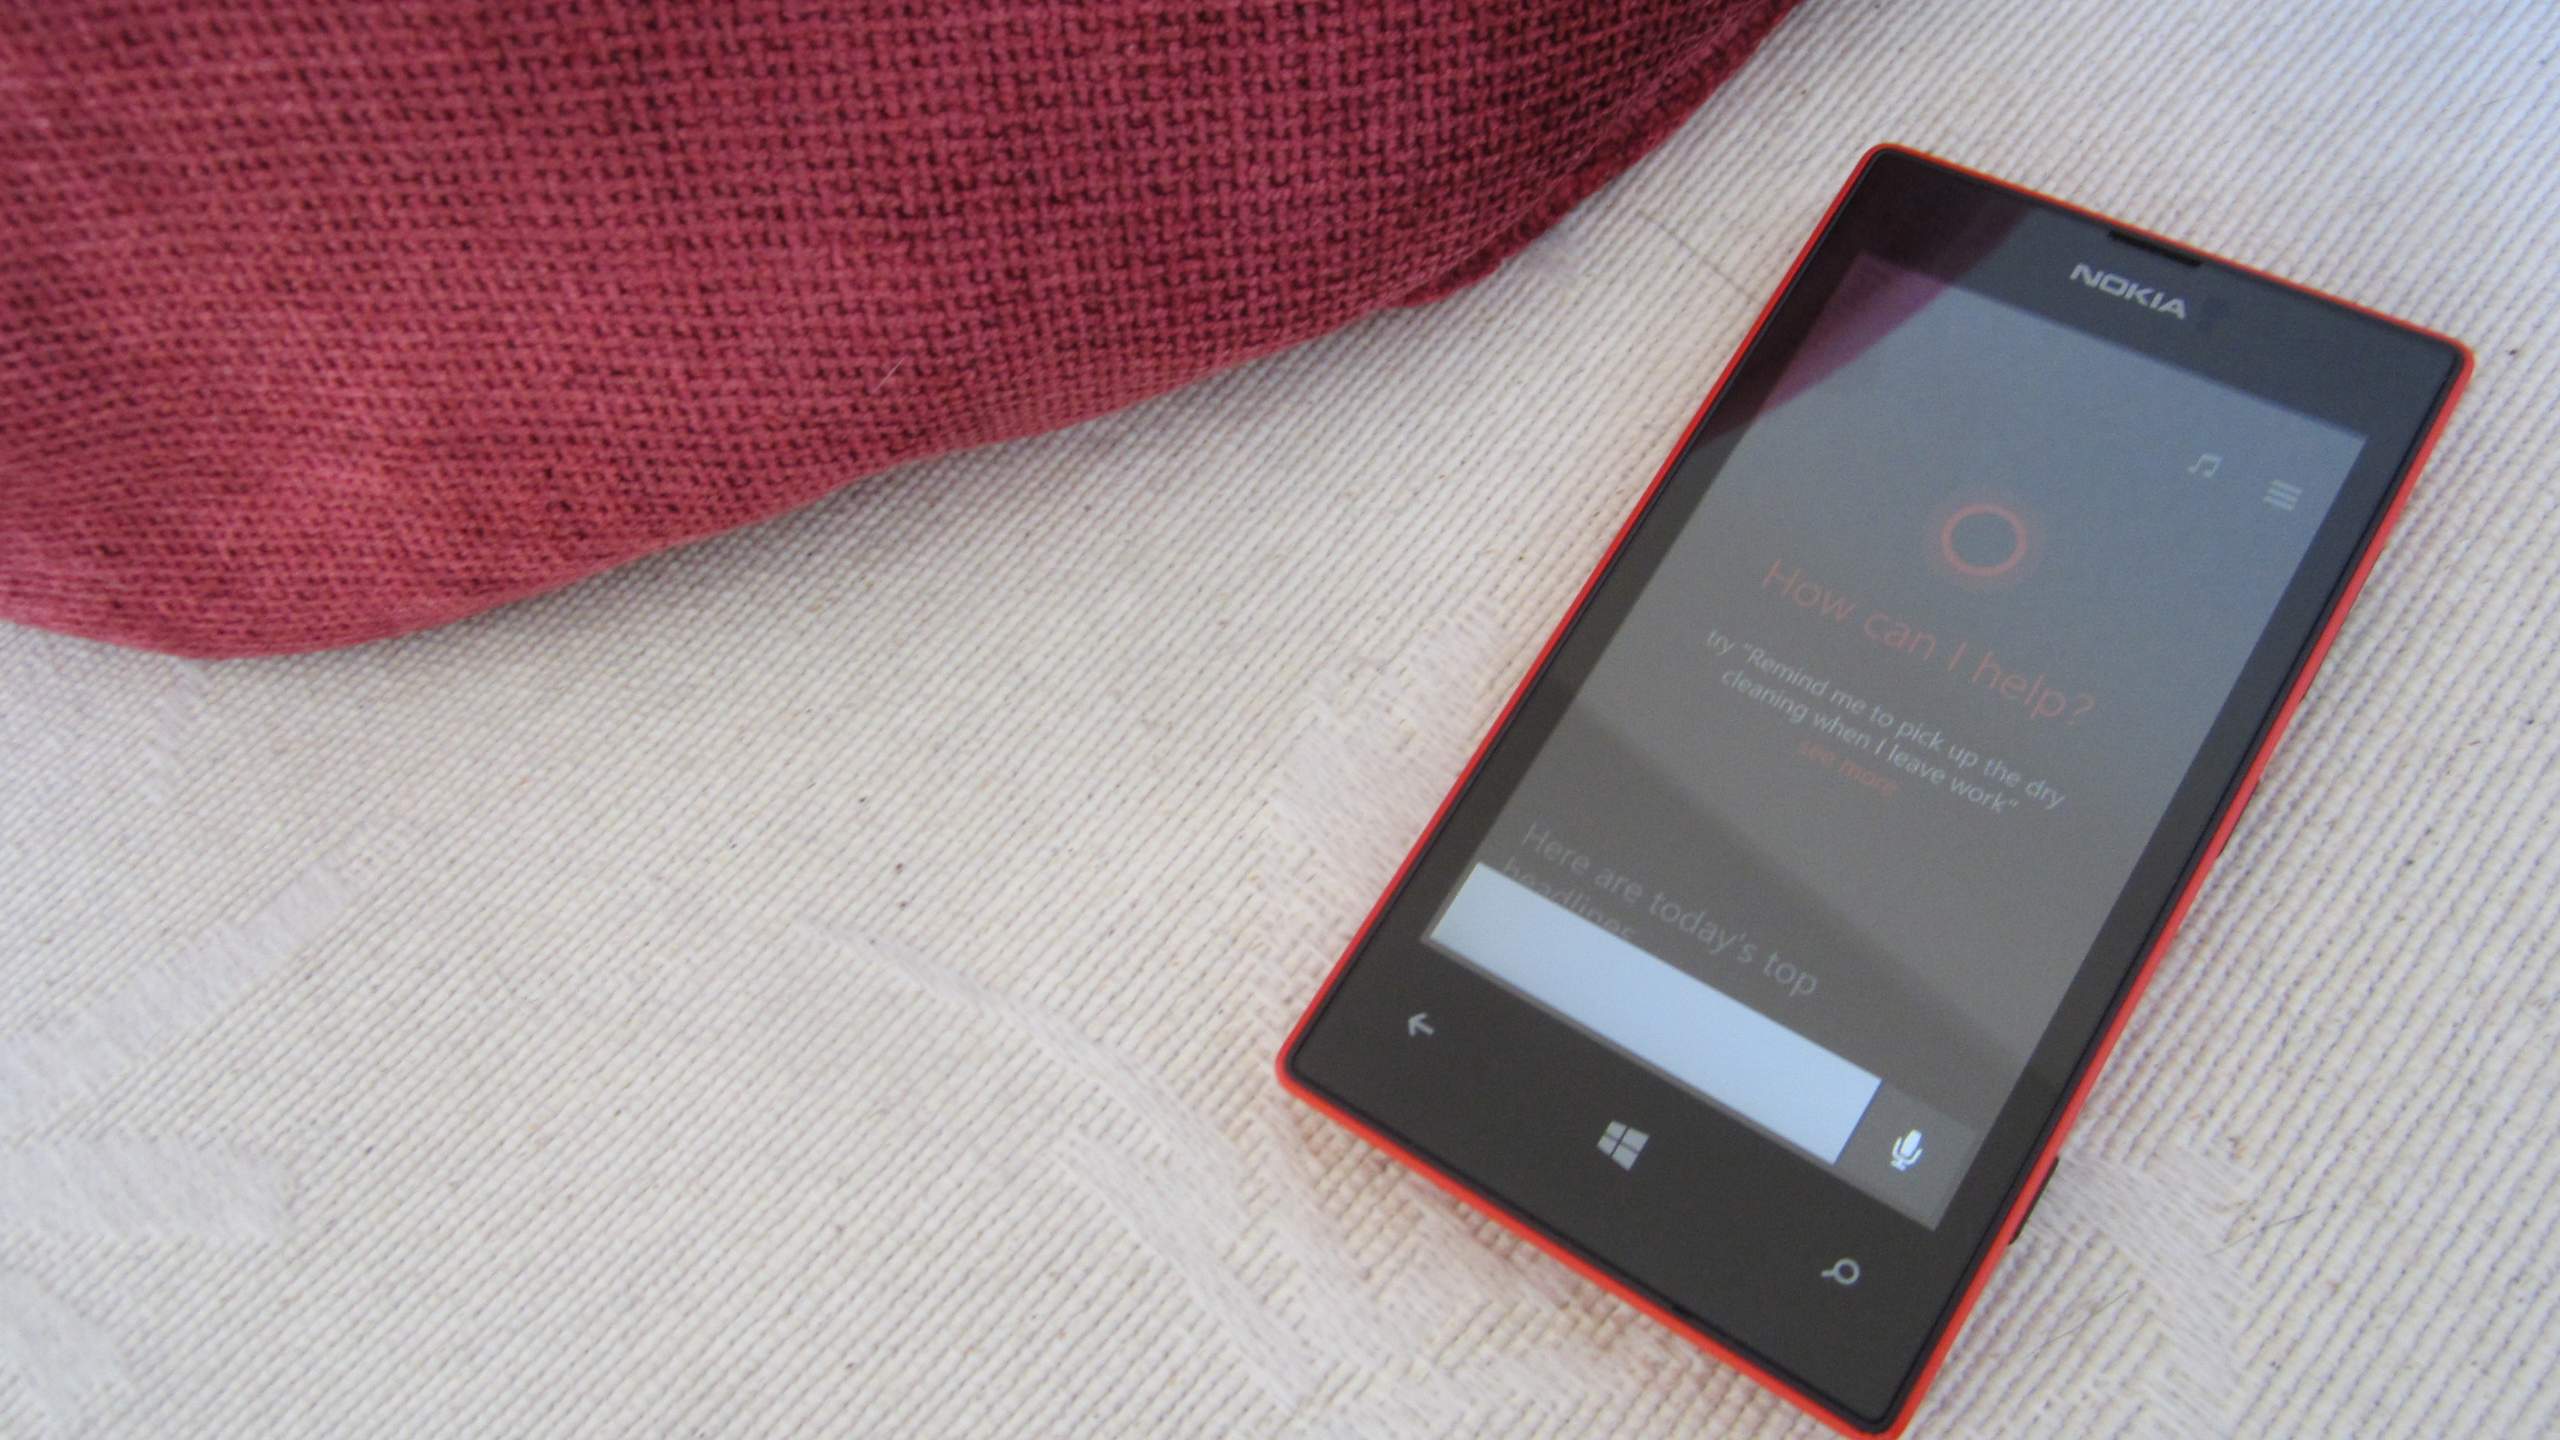 Cortana on my Nokia Lumia 520!